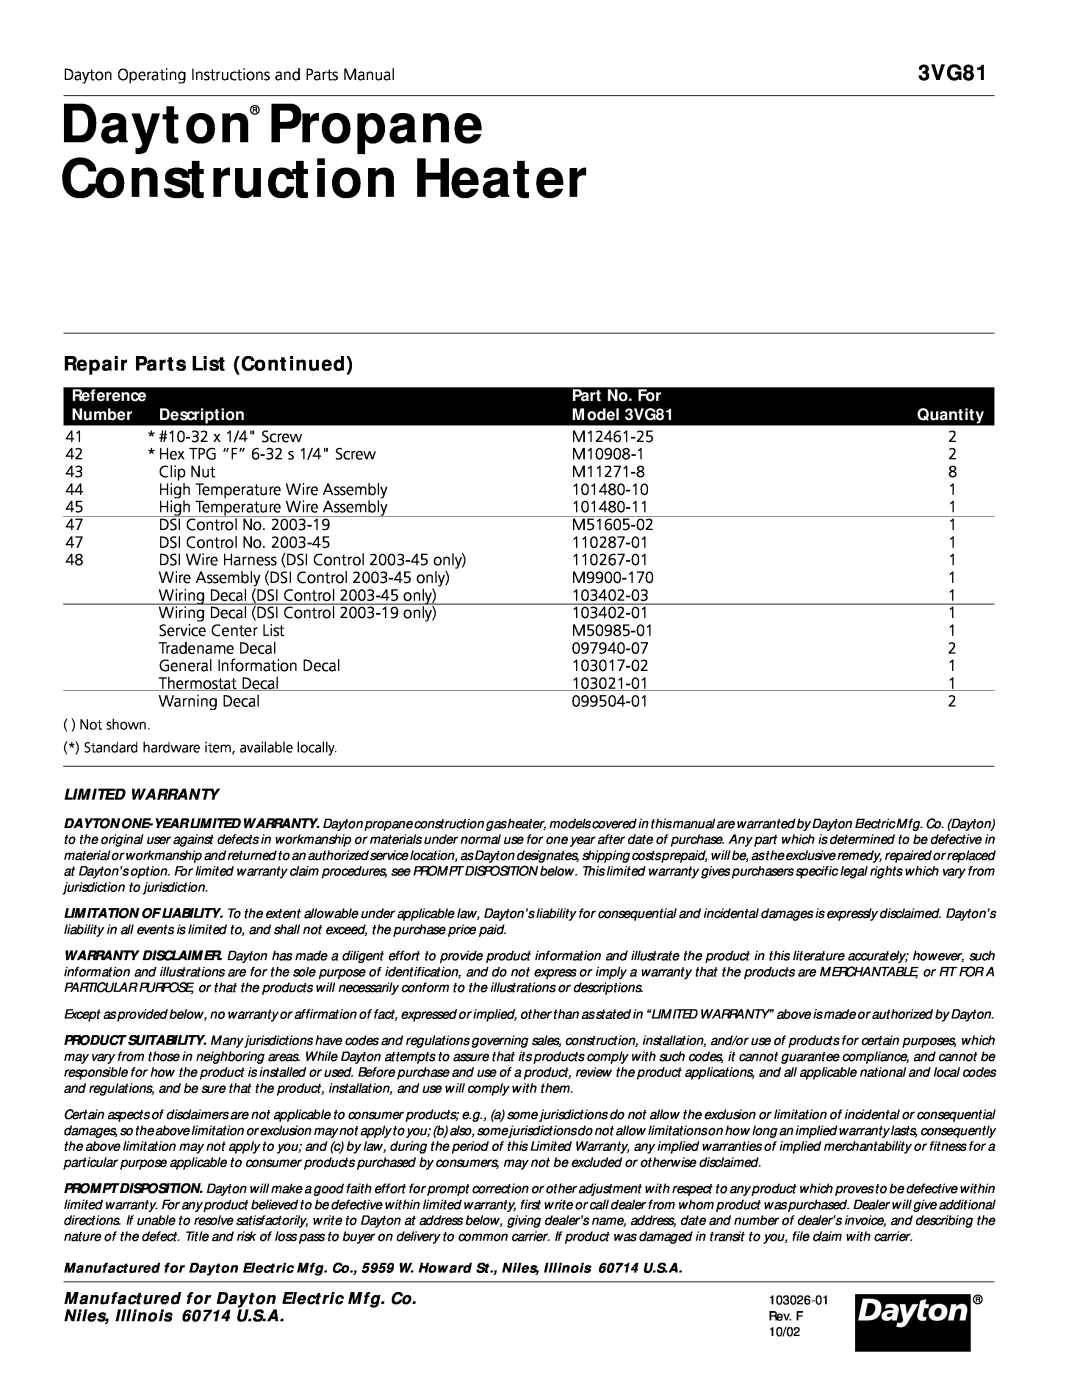 Dayton 3VG81 Dayton Propane Construction Heater, Repair Parts List Continued, Part No. For, Number, Description, Quantity 